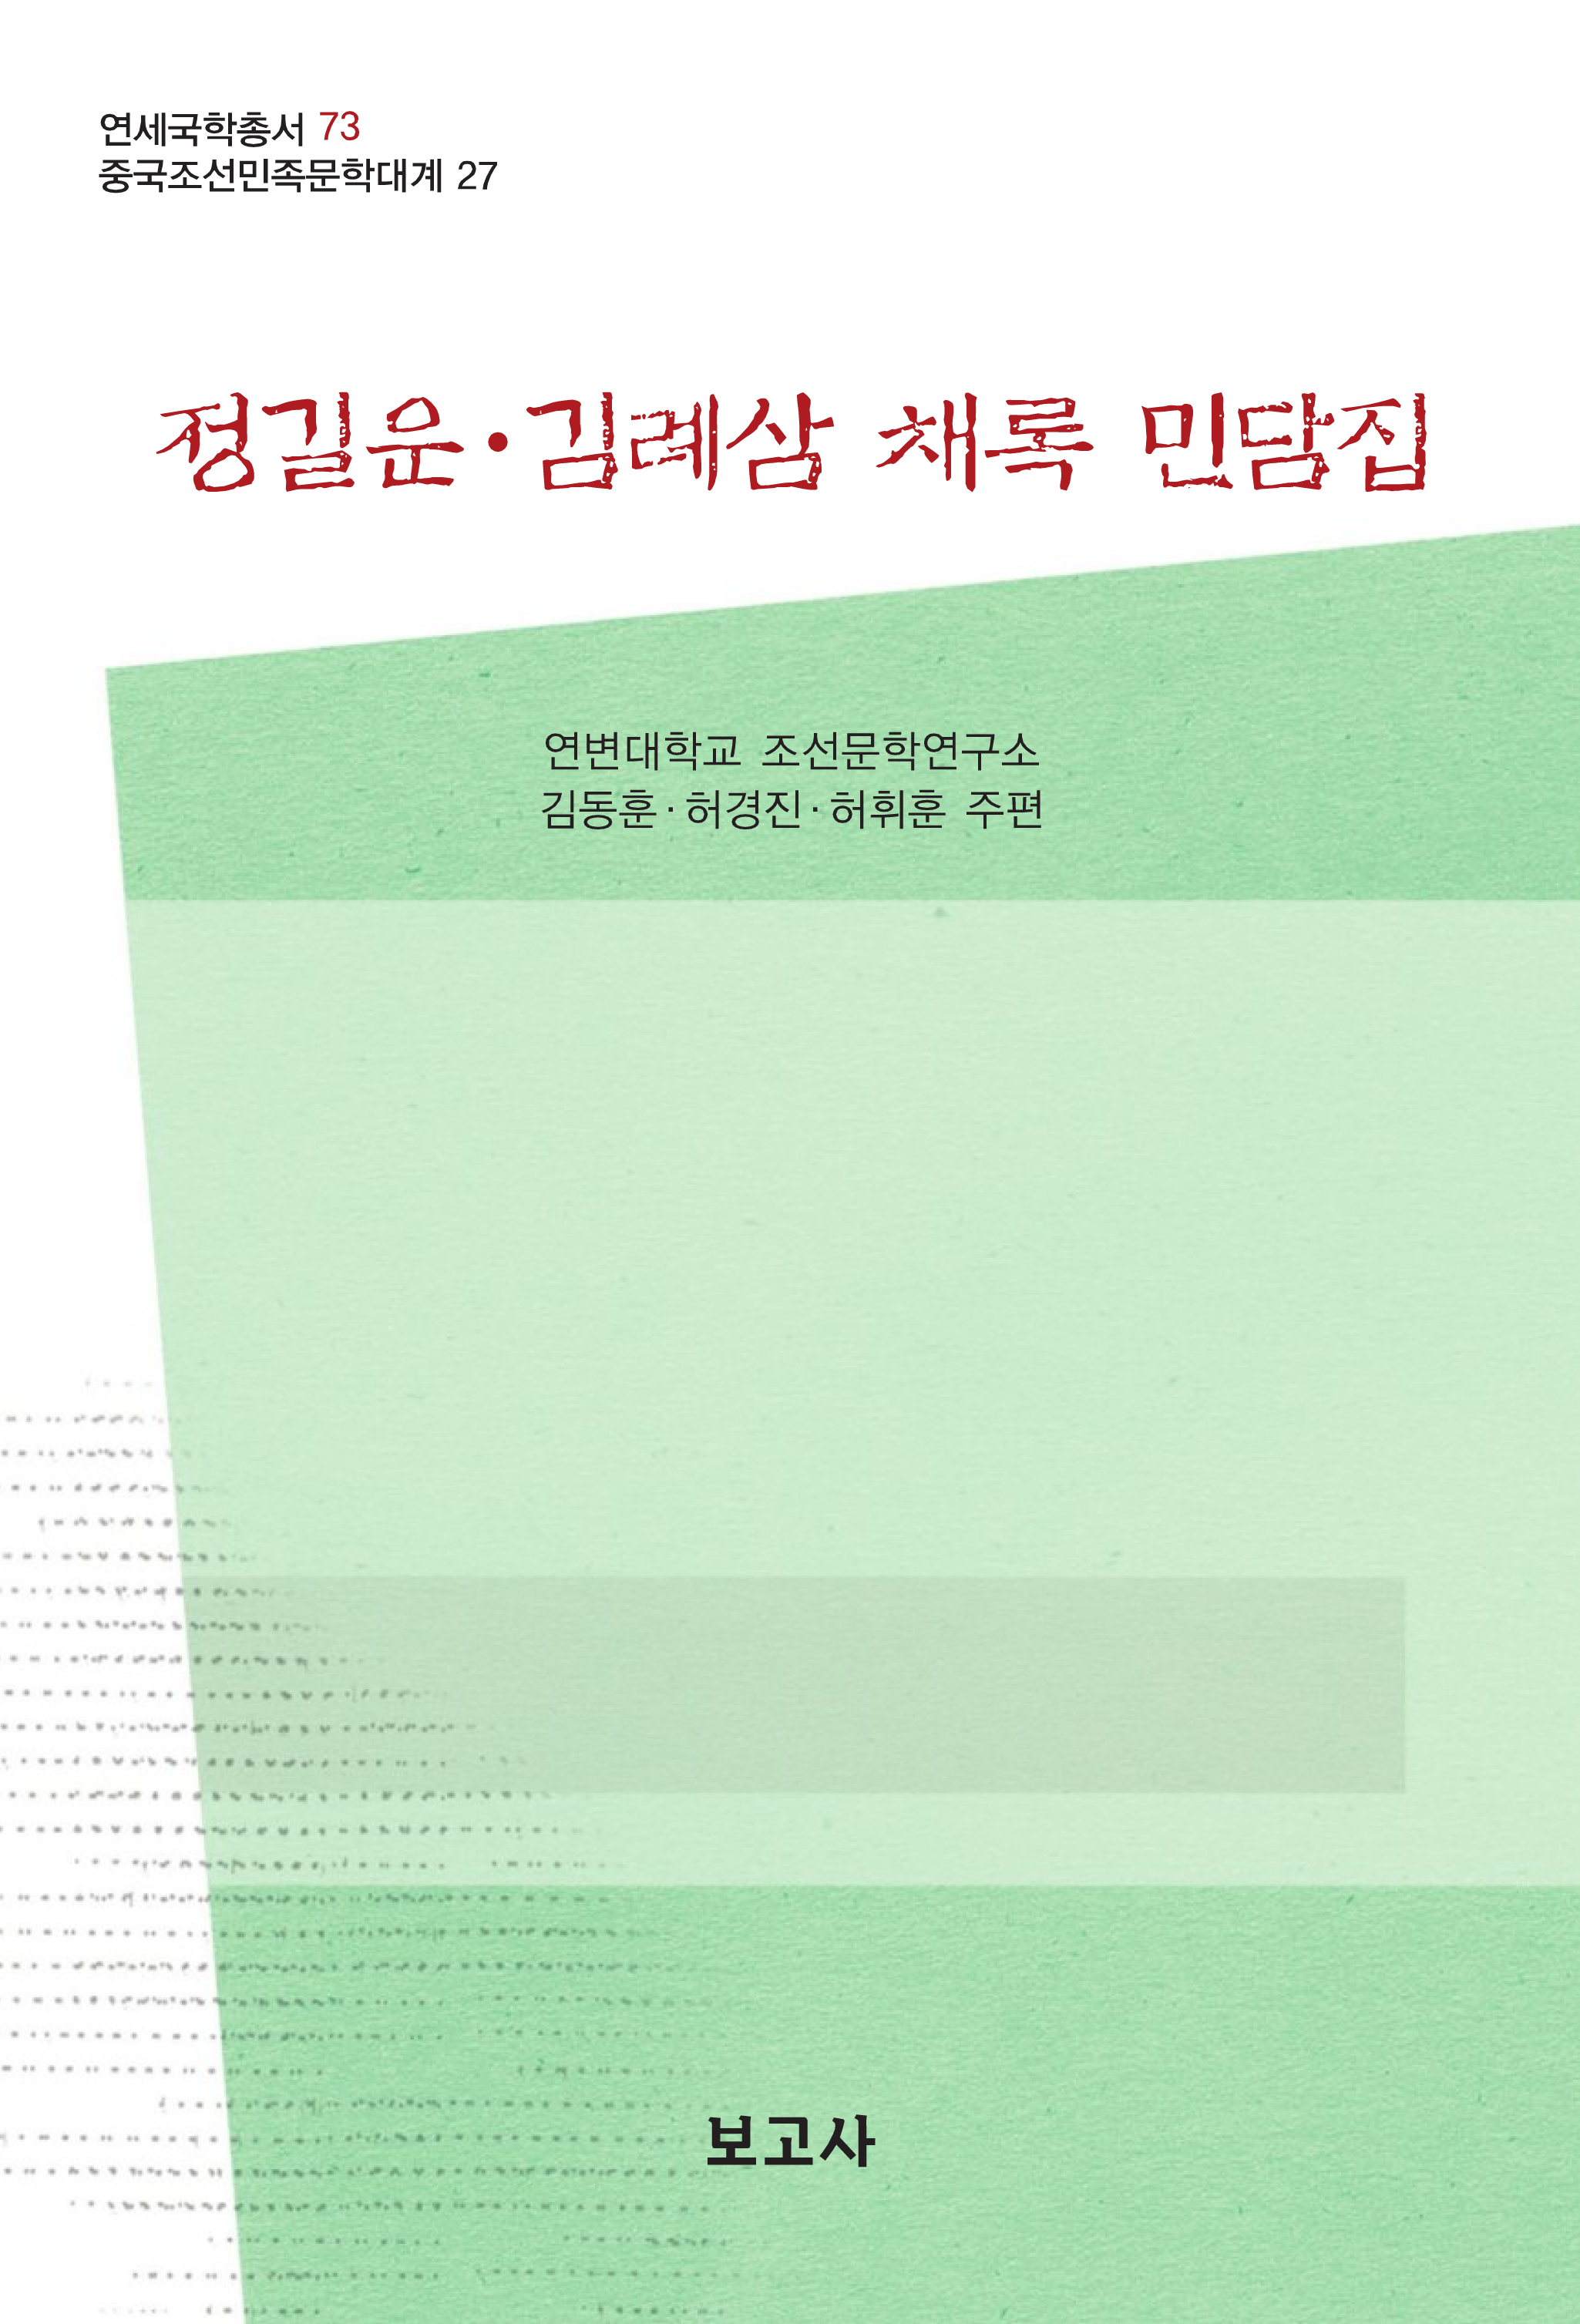 중국조선민족문학대계27 / 정길운·김례삼 채록 민담집